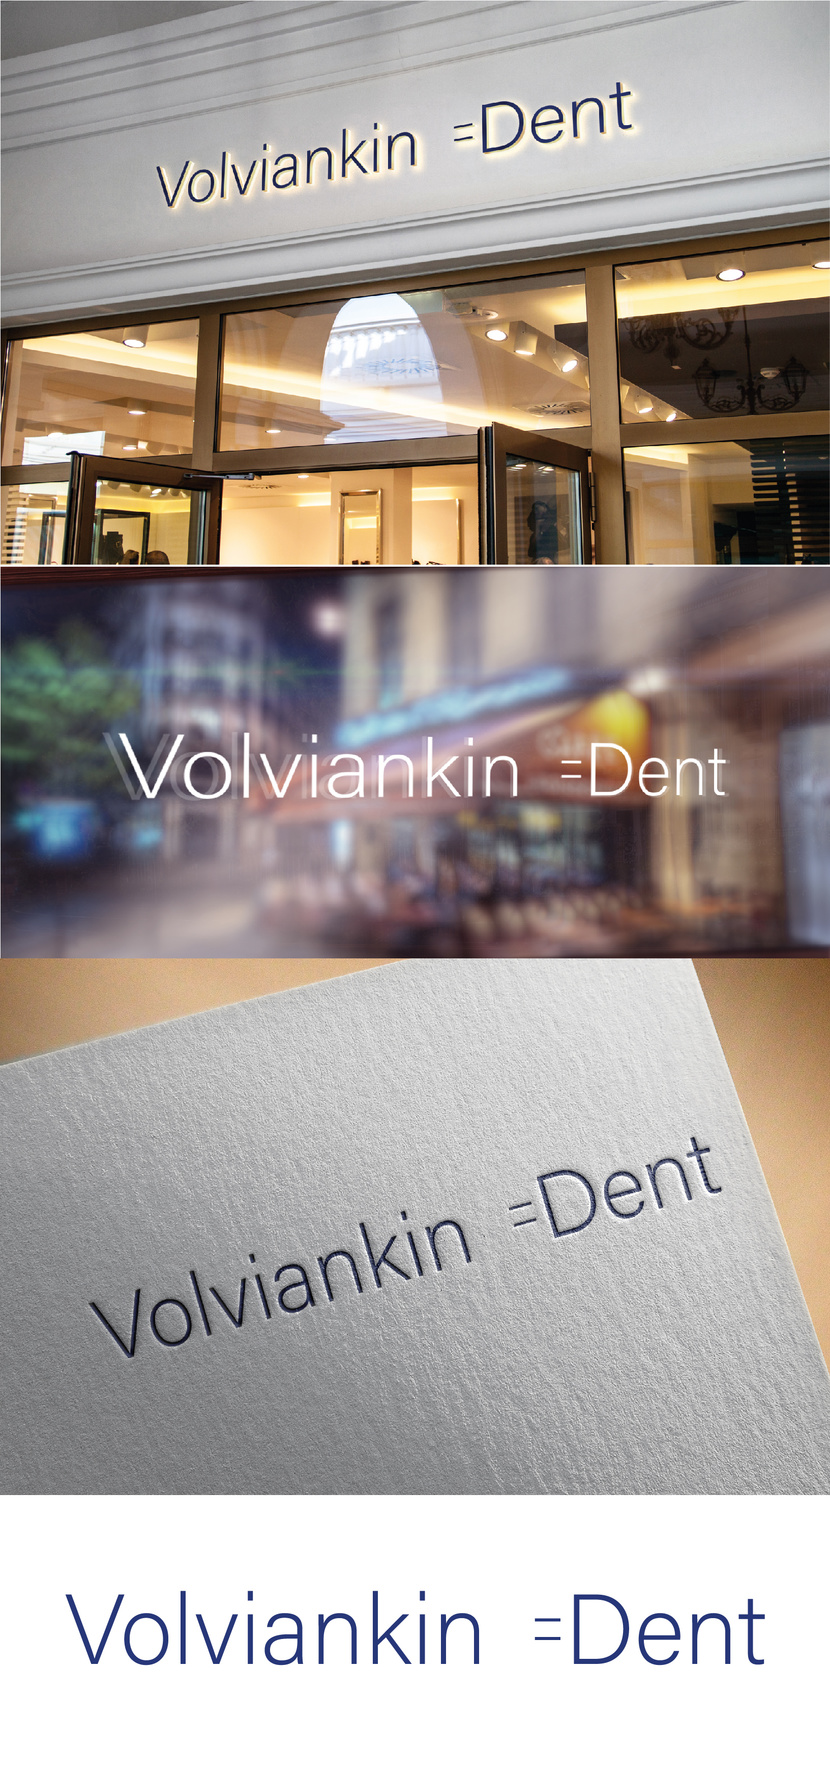 Logo Volviankin dent.
Если понравится логотип продолжу работать над визитками. - Логотип и визитка стоматолога